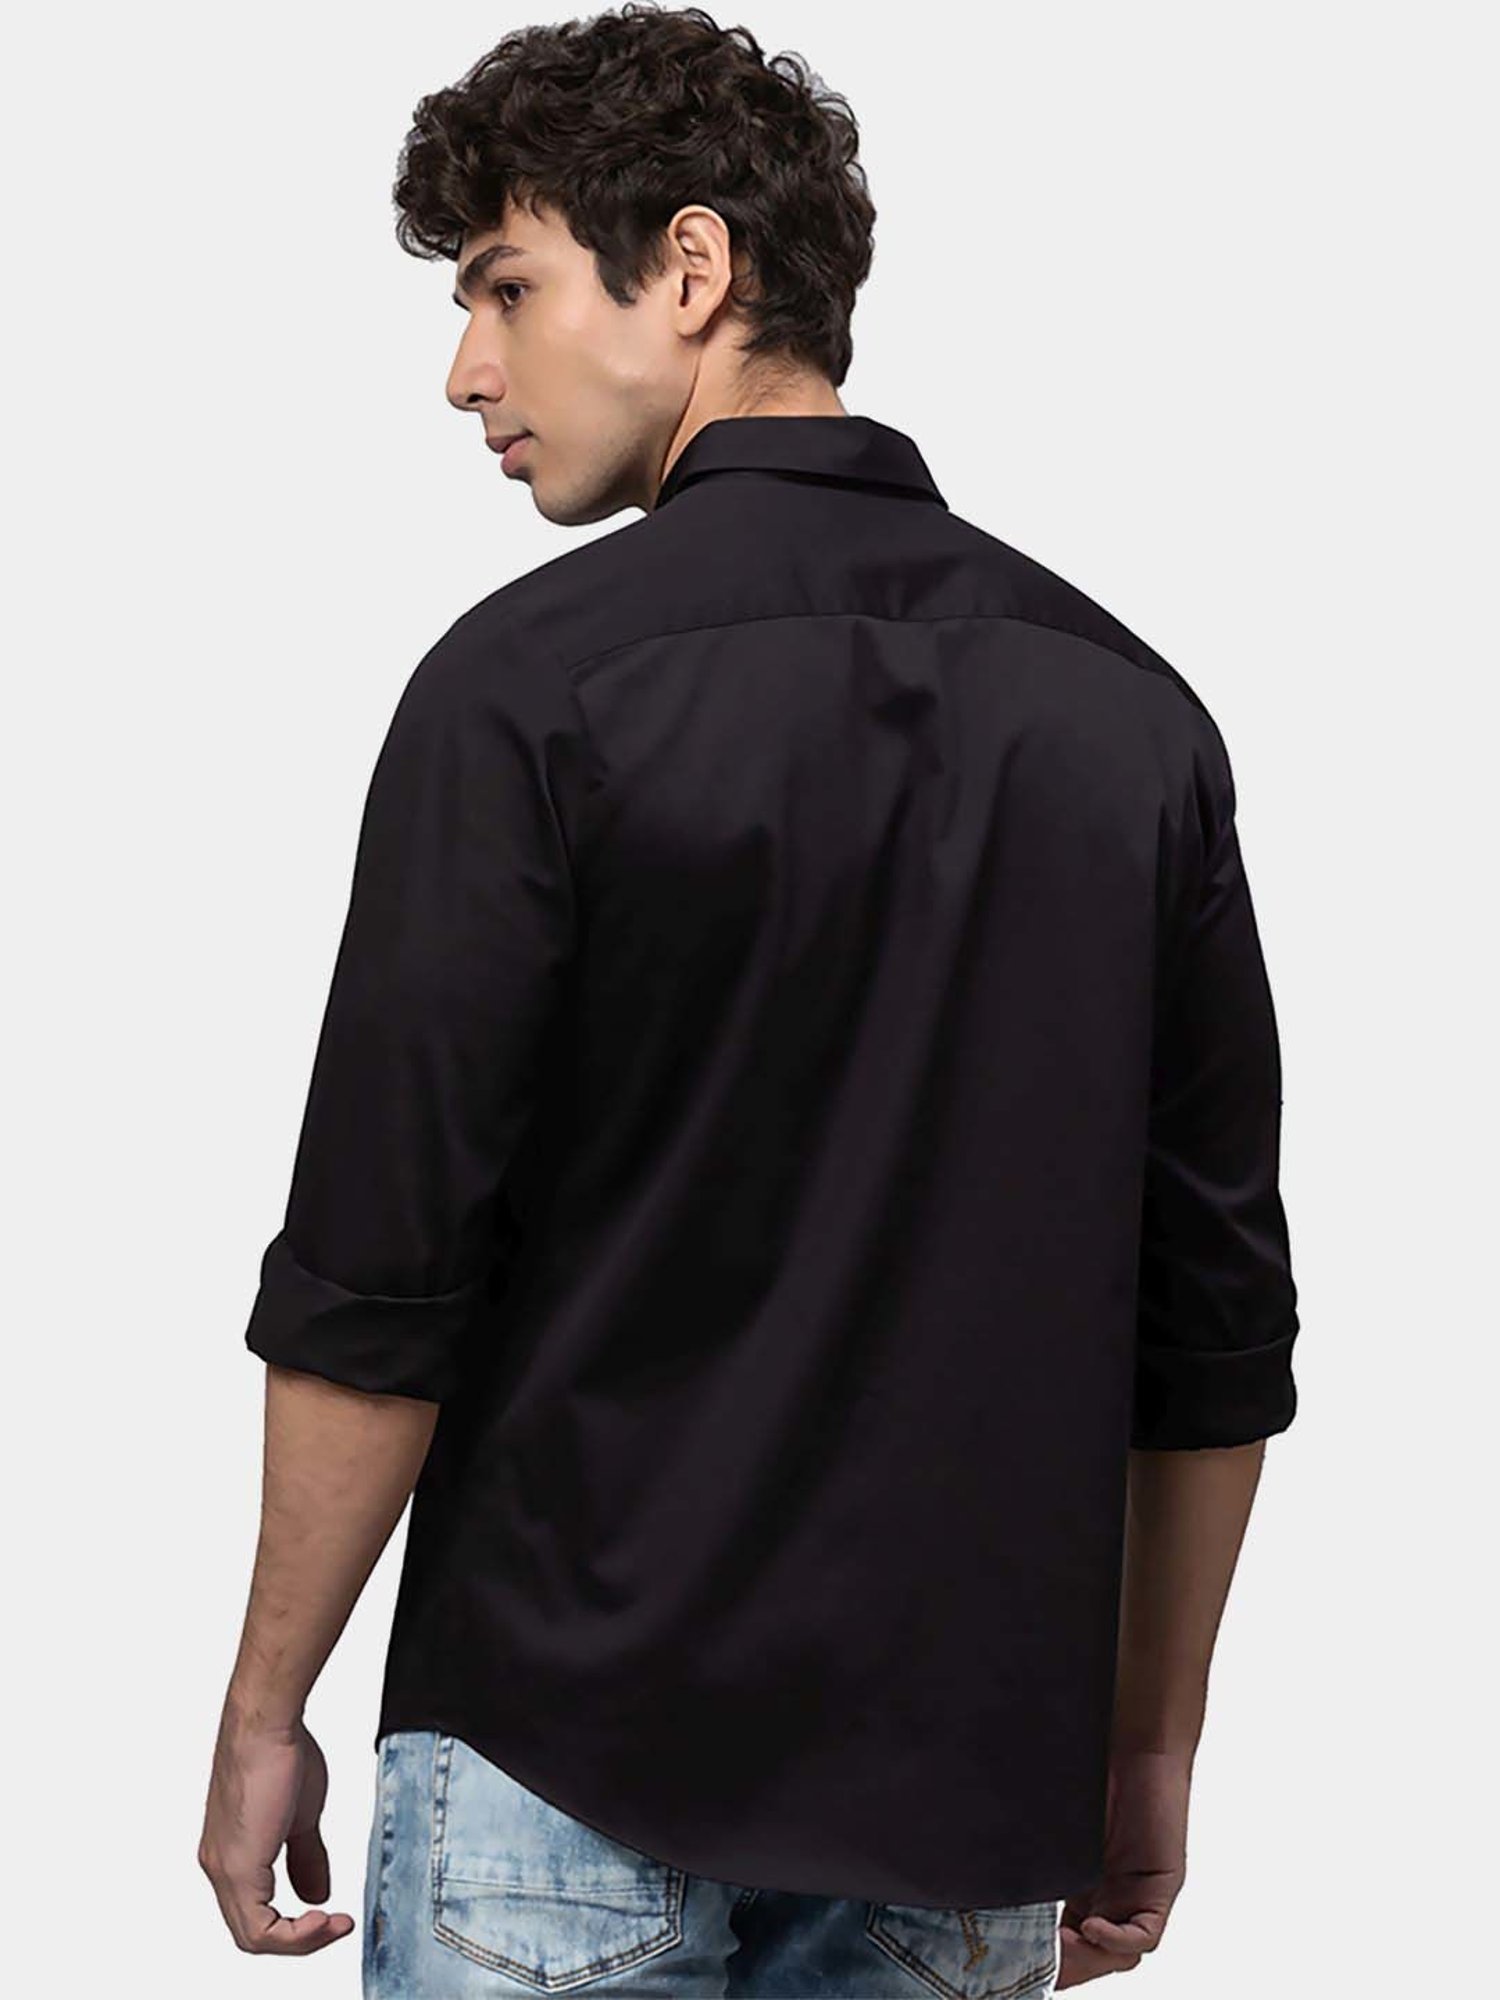 Denim shirt | Denim shirt, Fashion hub, Fashion